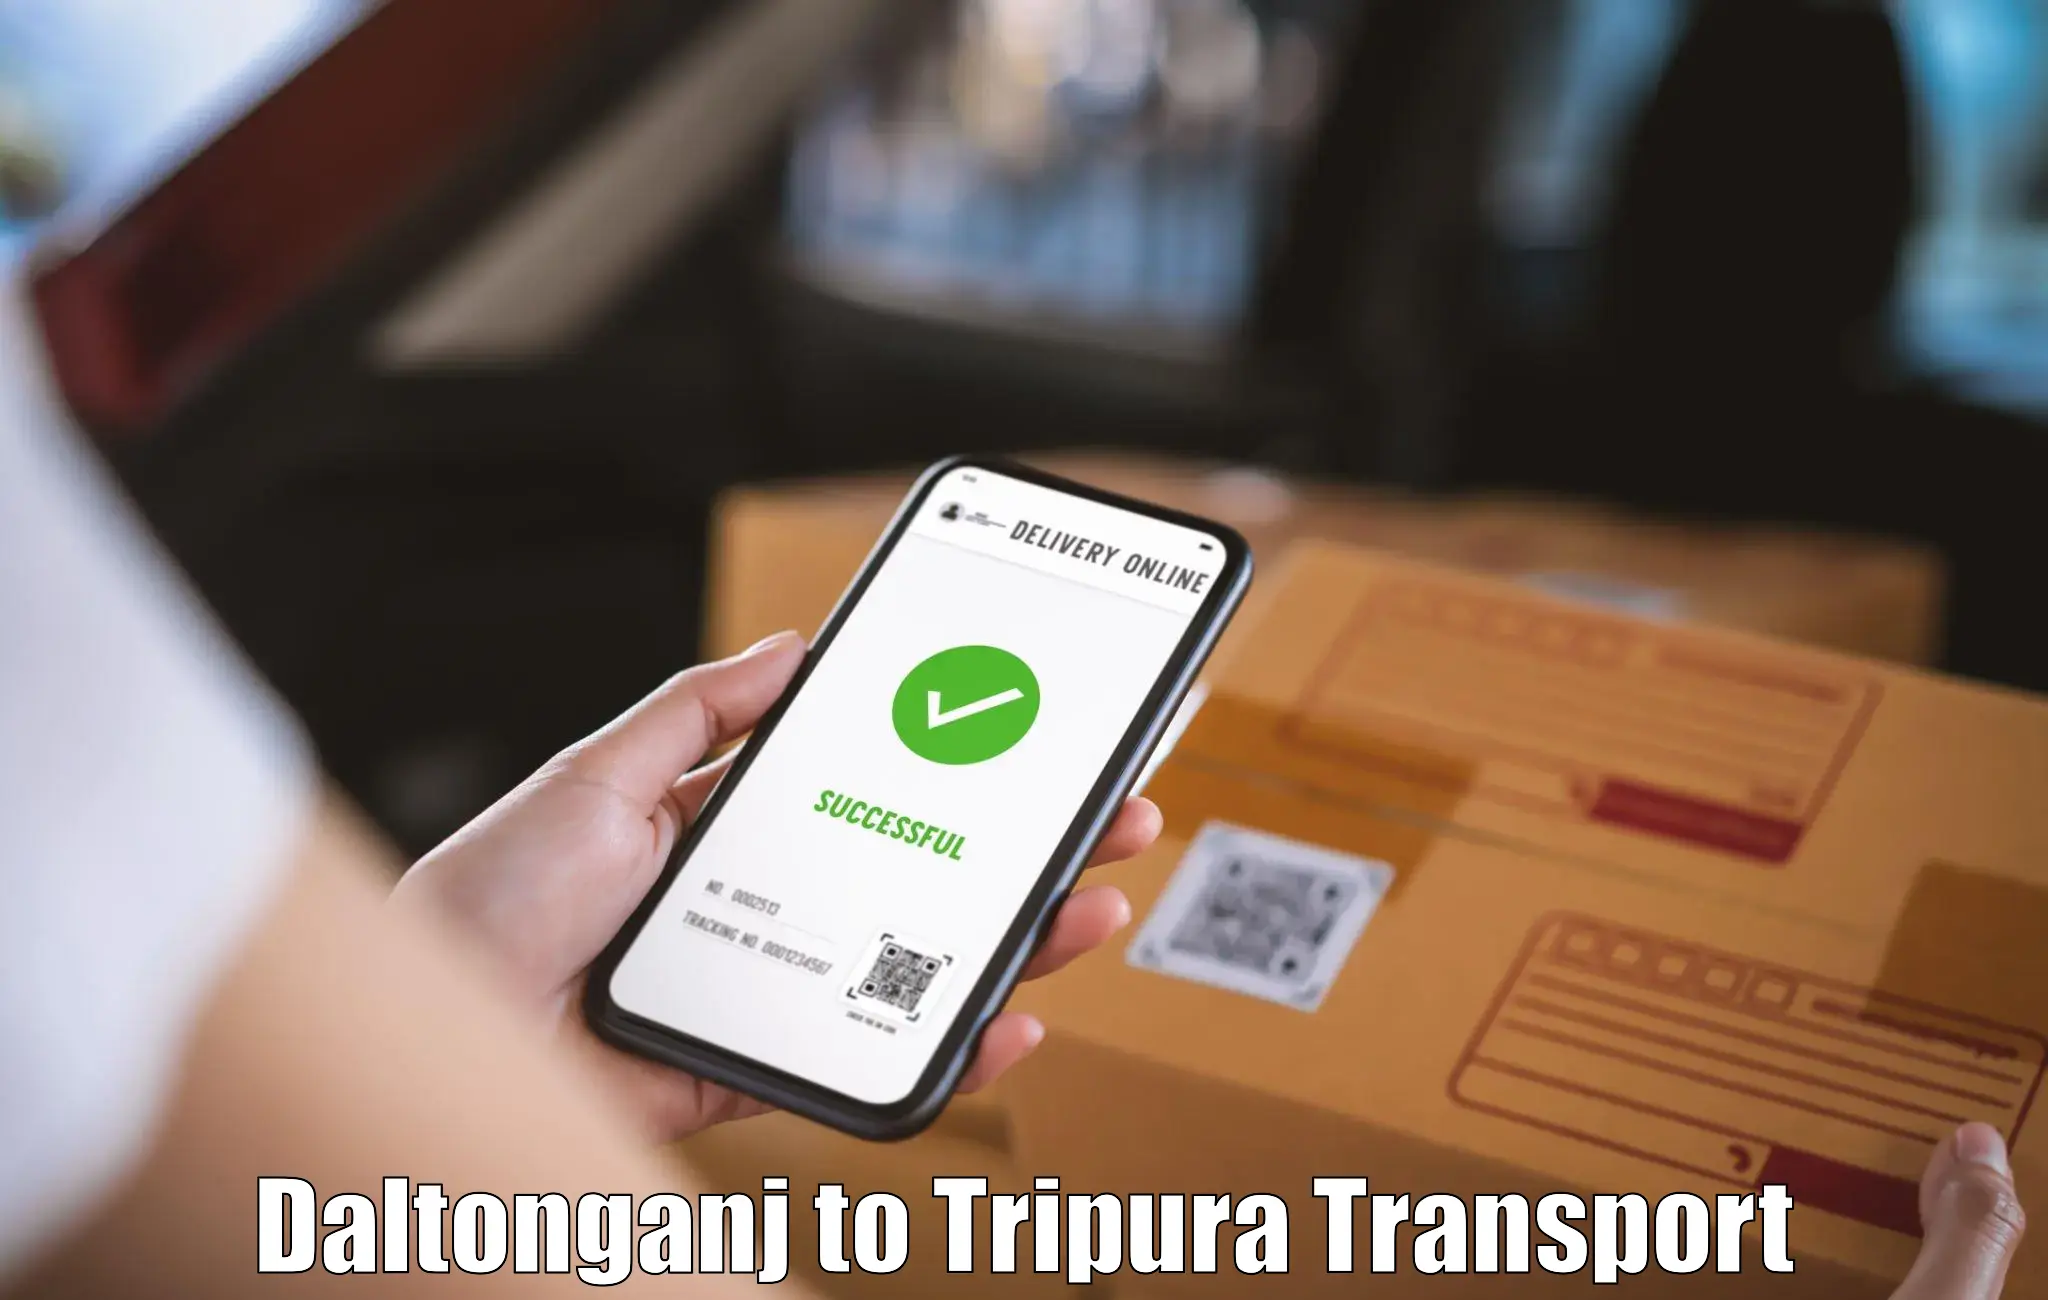 Material transport services in Daltonganj to Tripura